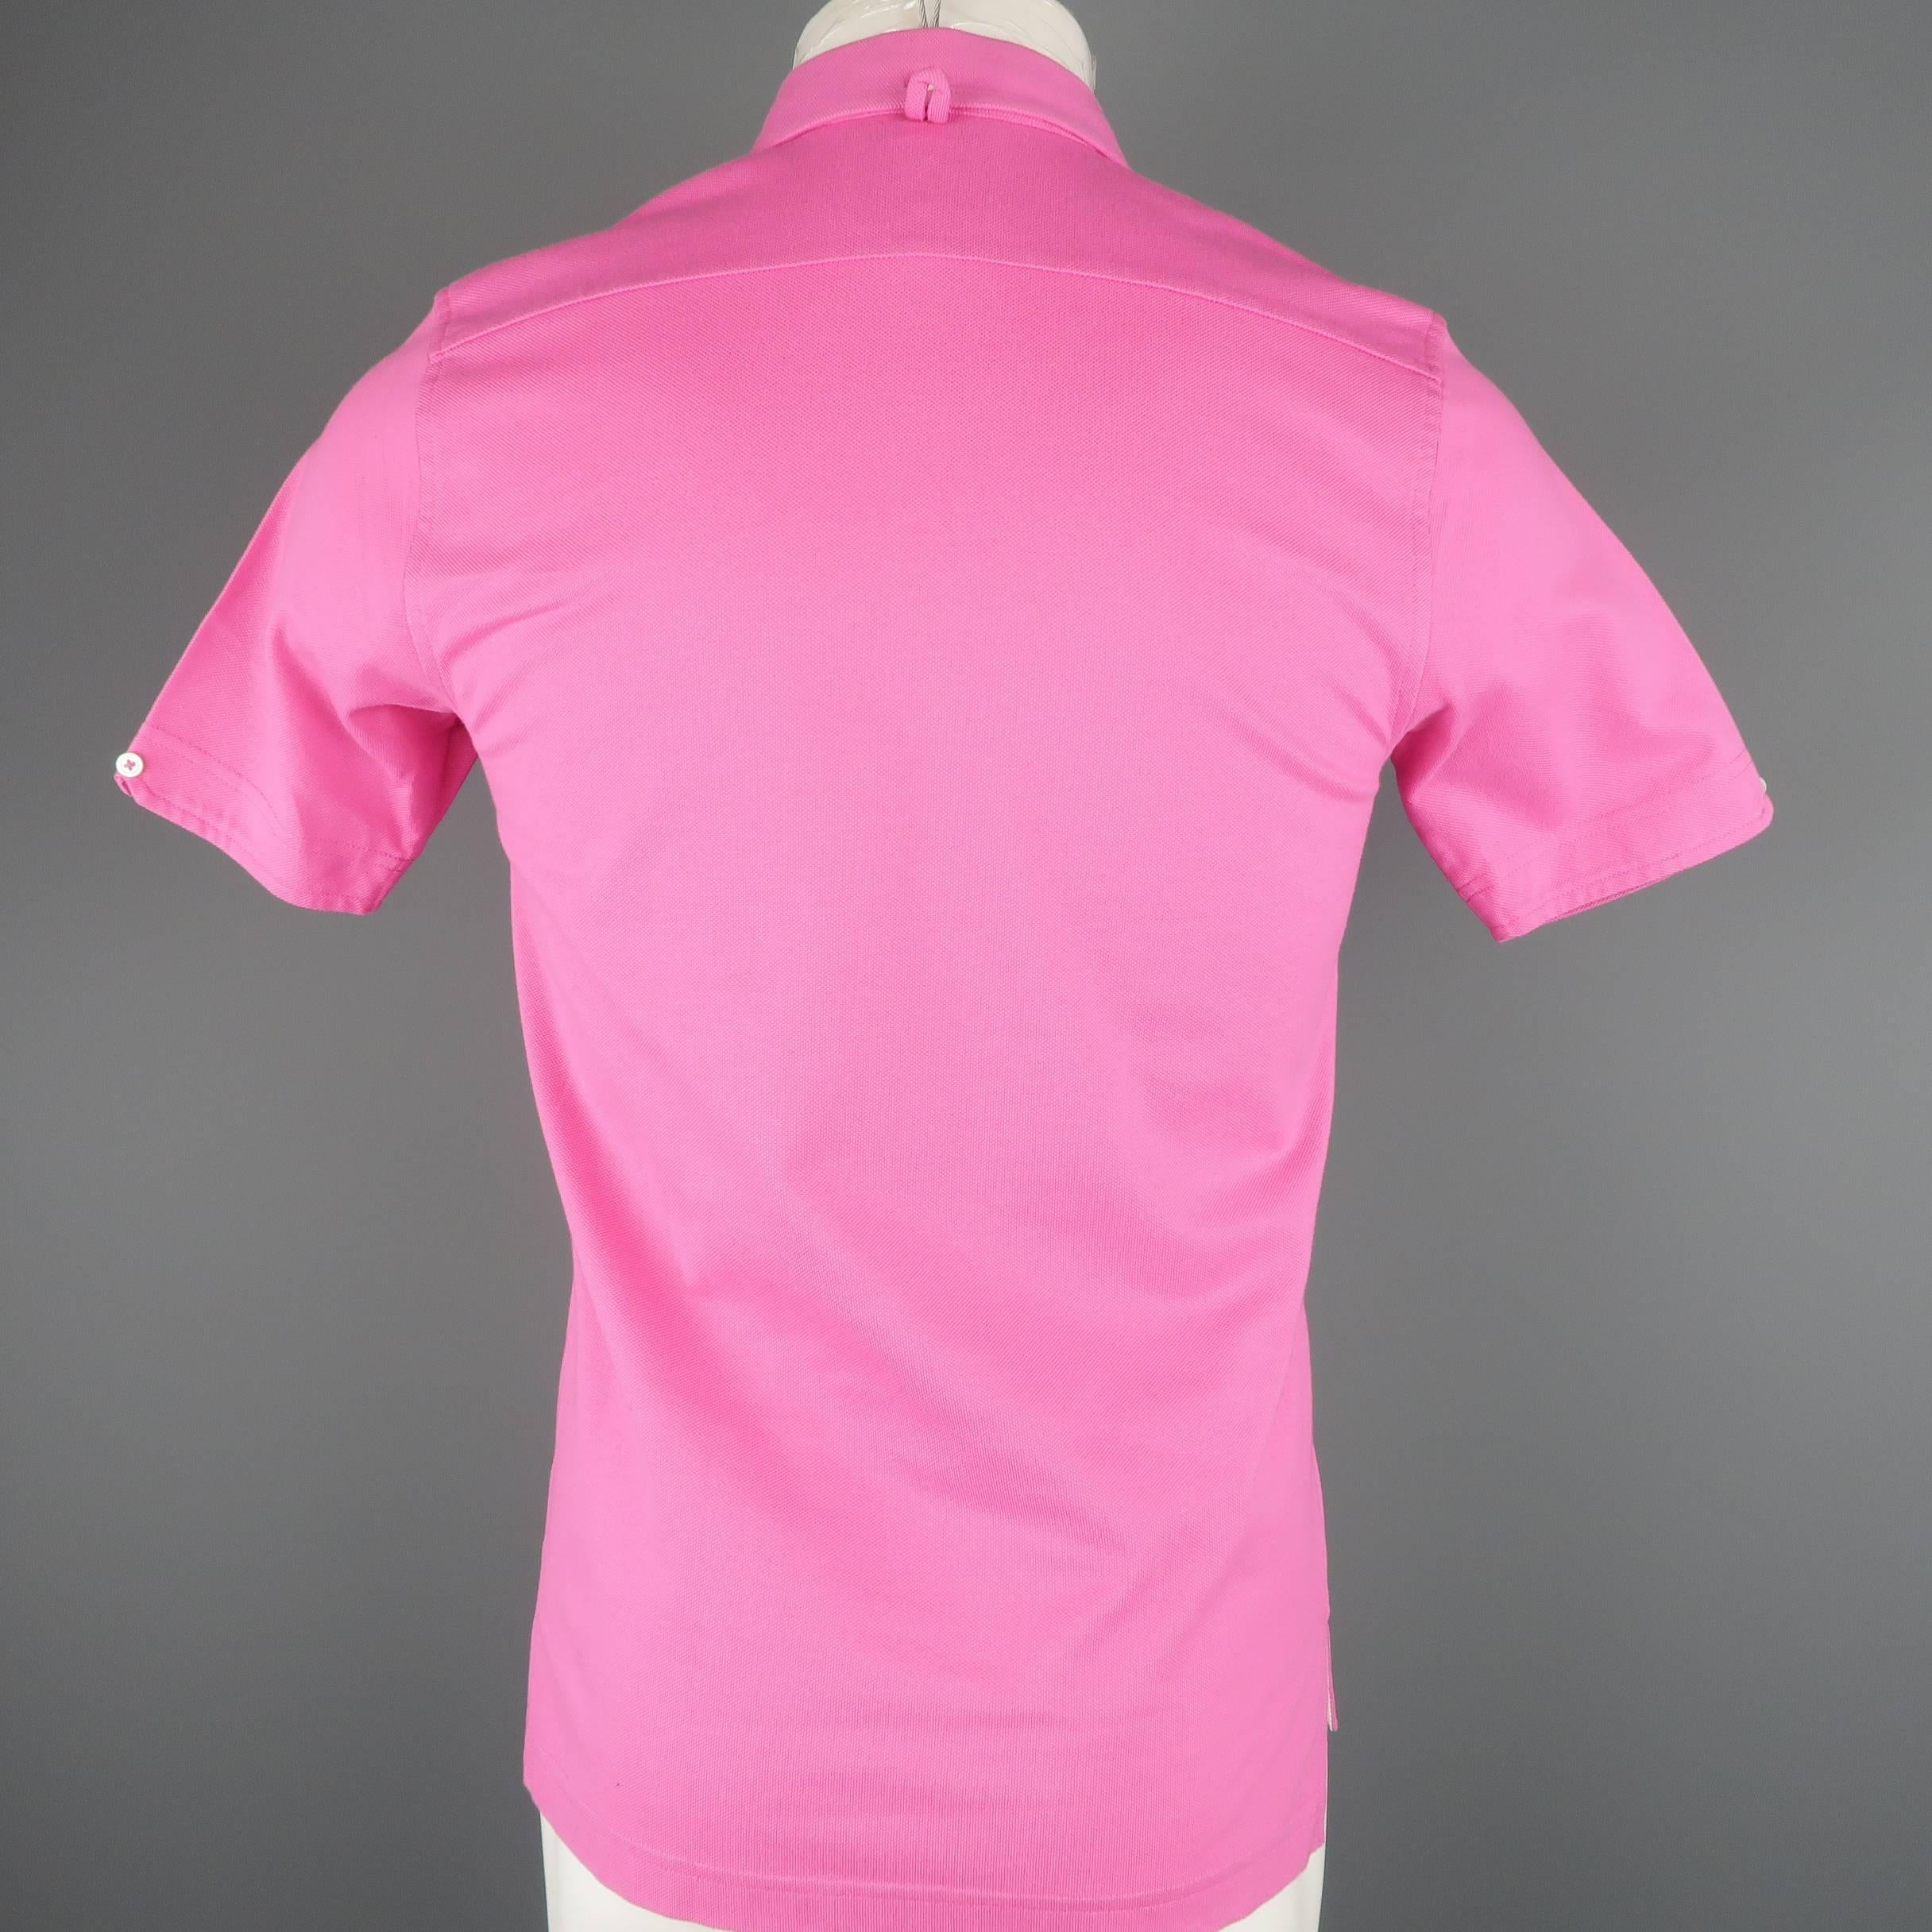 Men's BLACK FLEECE Size S Pink Pique Button Collar POLO 3